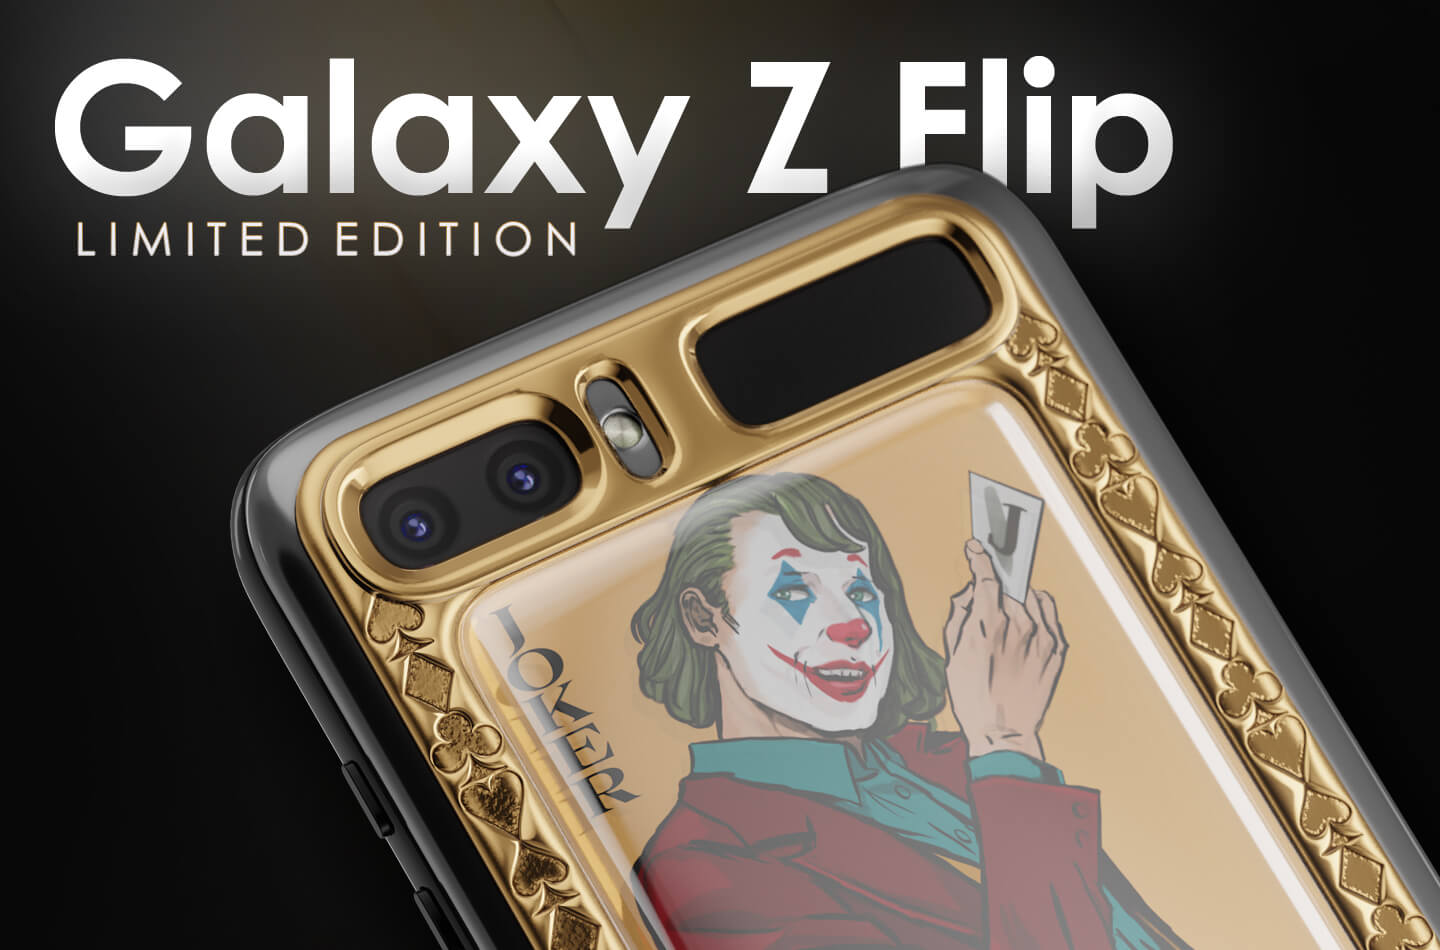 Samsung Galaxy Z Flip Limited Edition LetsGoDigital